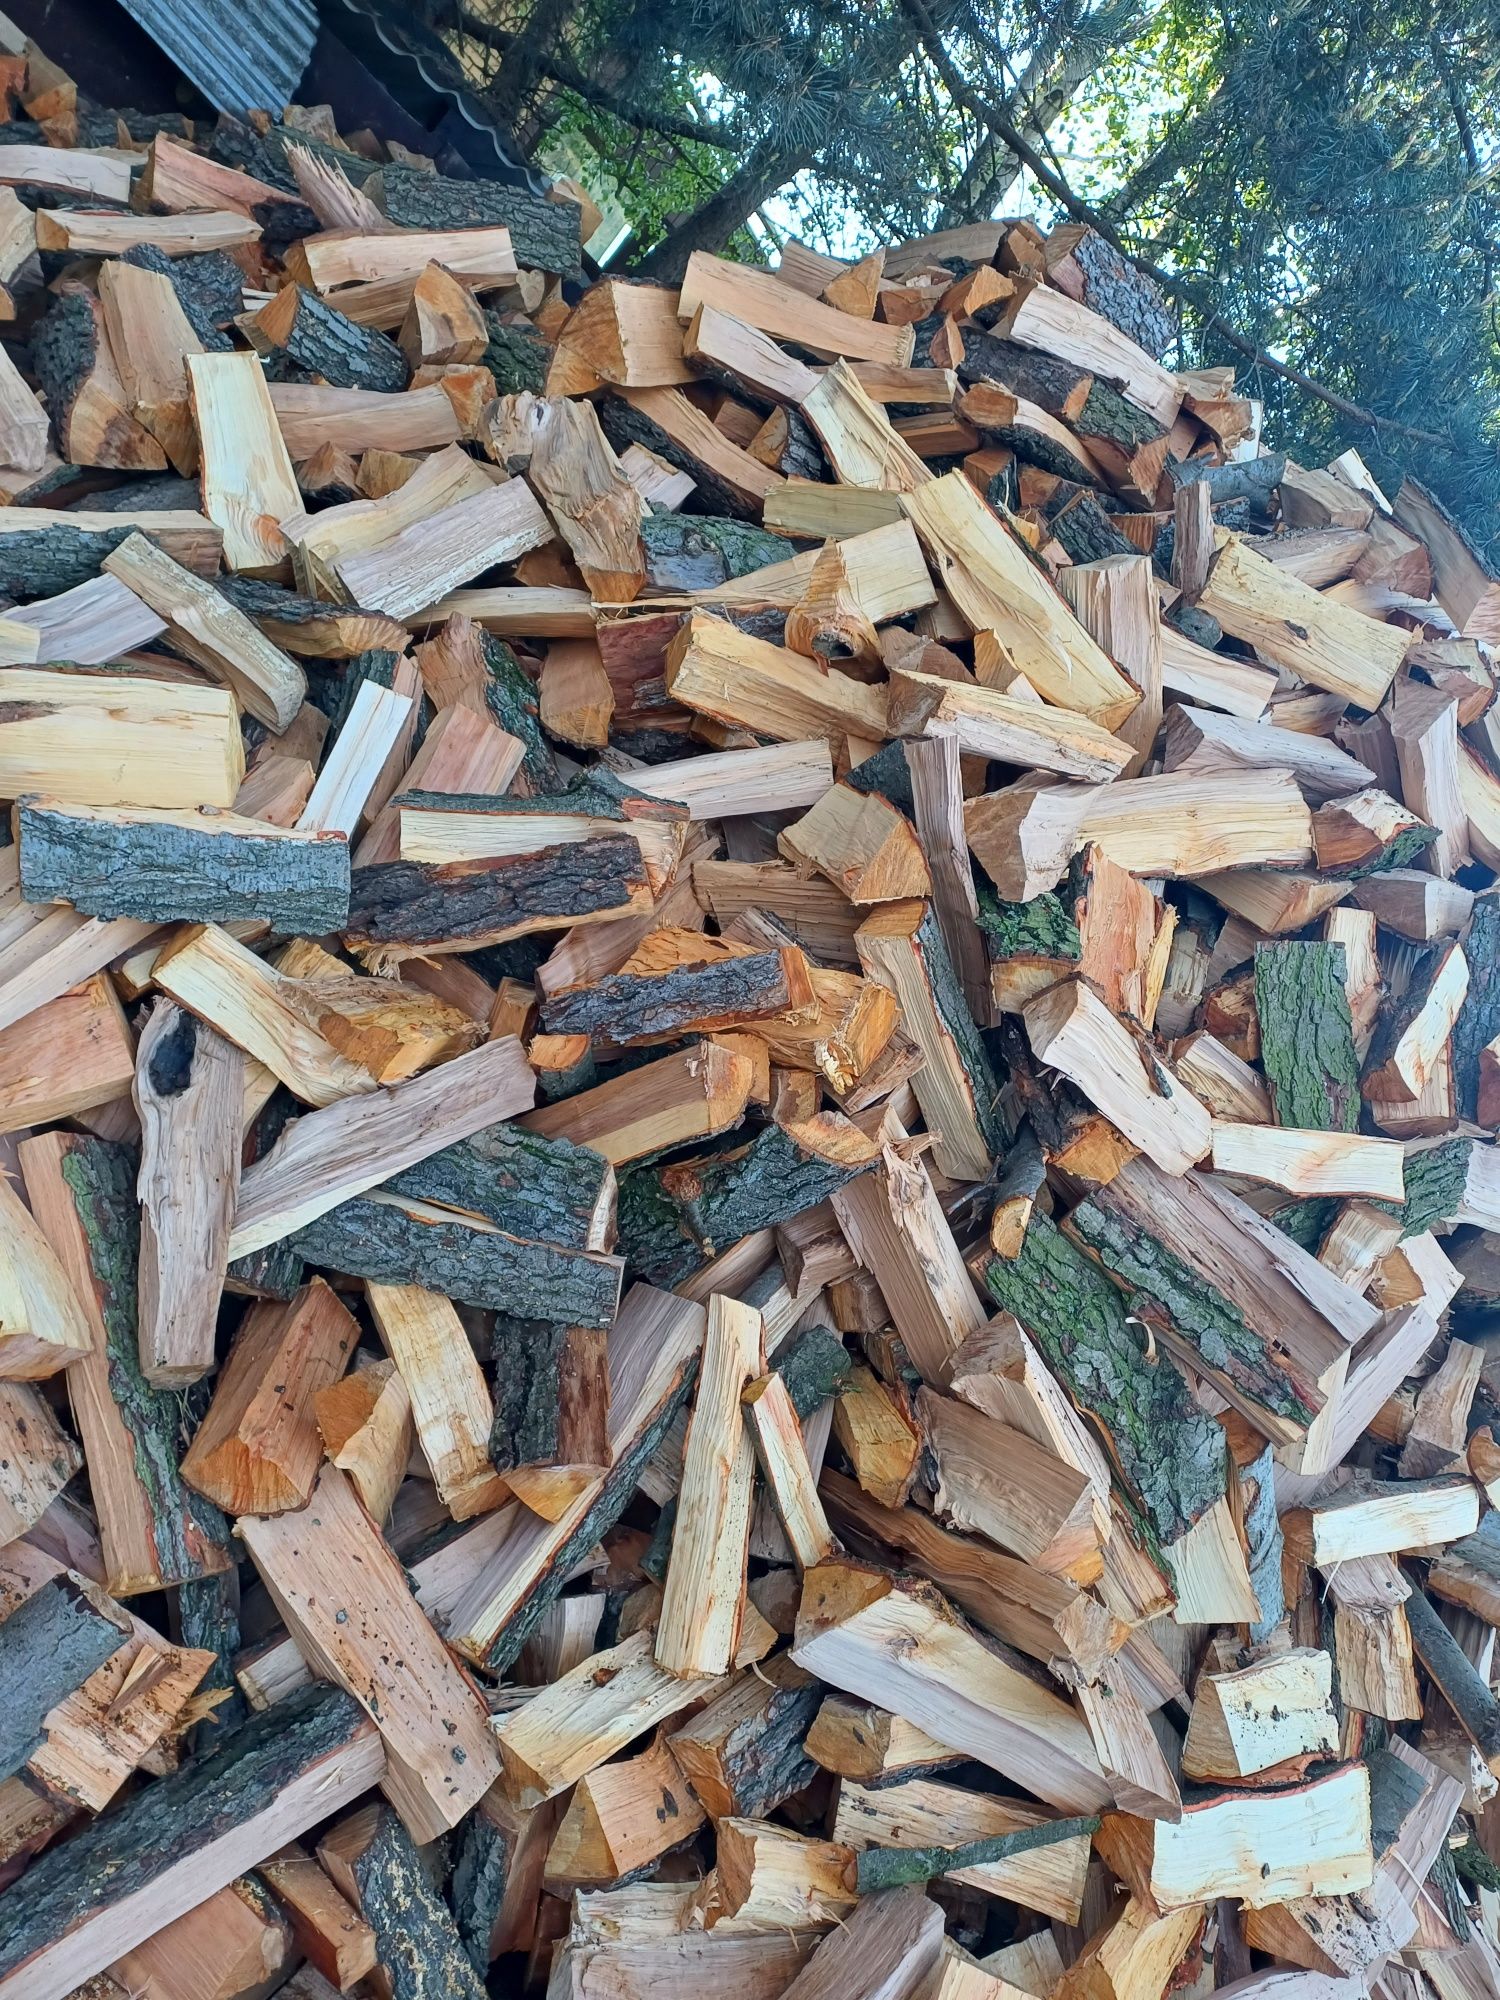 Drewno drzewo akacja kominkowe olchą opałowe liściaste transport grati